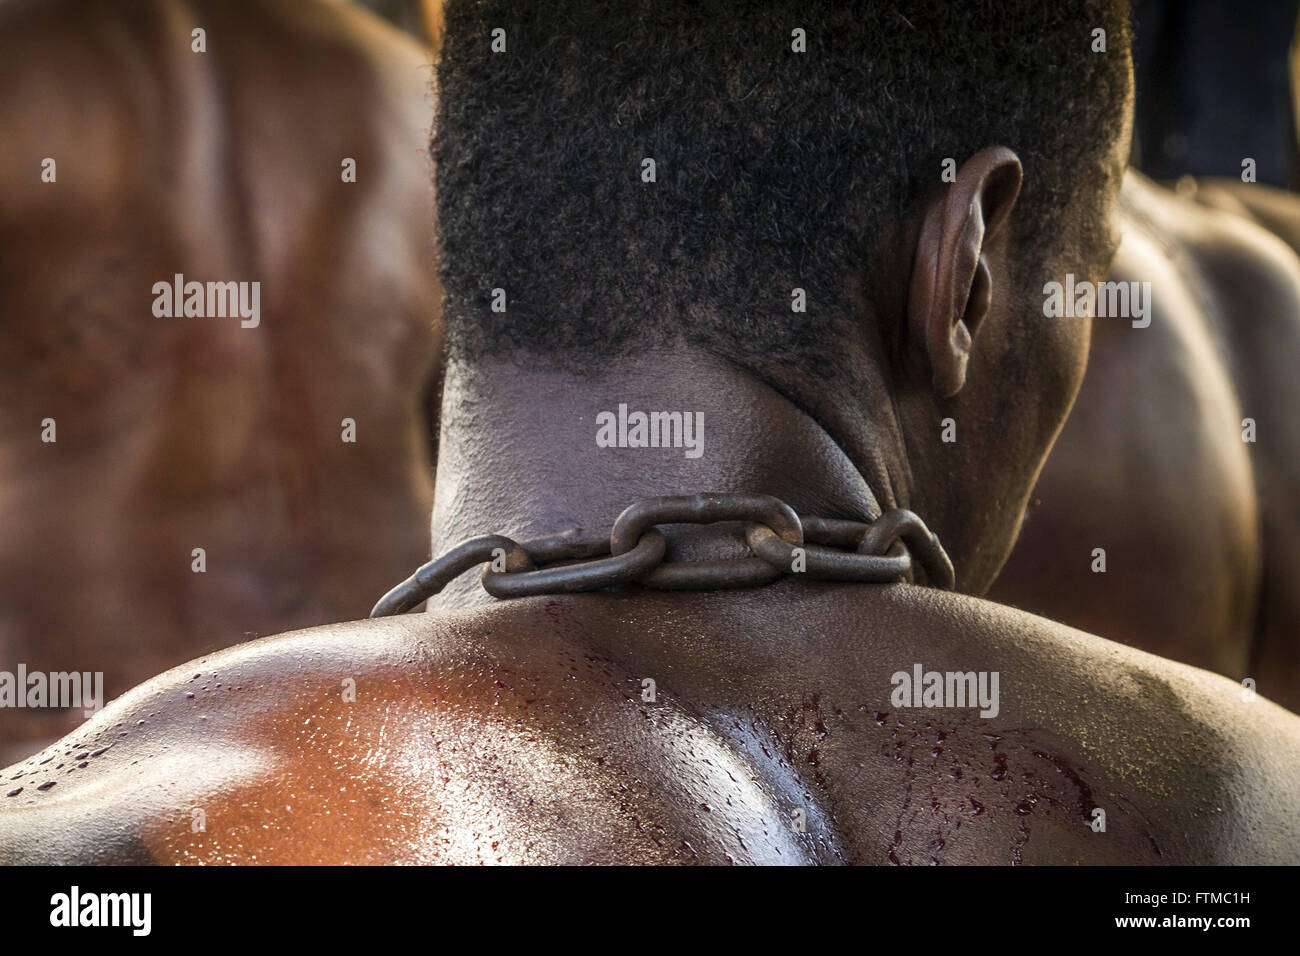 Escenificación de la esclavitud realizados por residentes en conmemoración de la abolición de la esclavitud Foto de stock